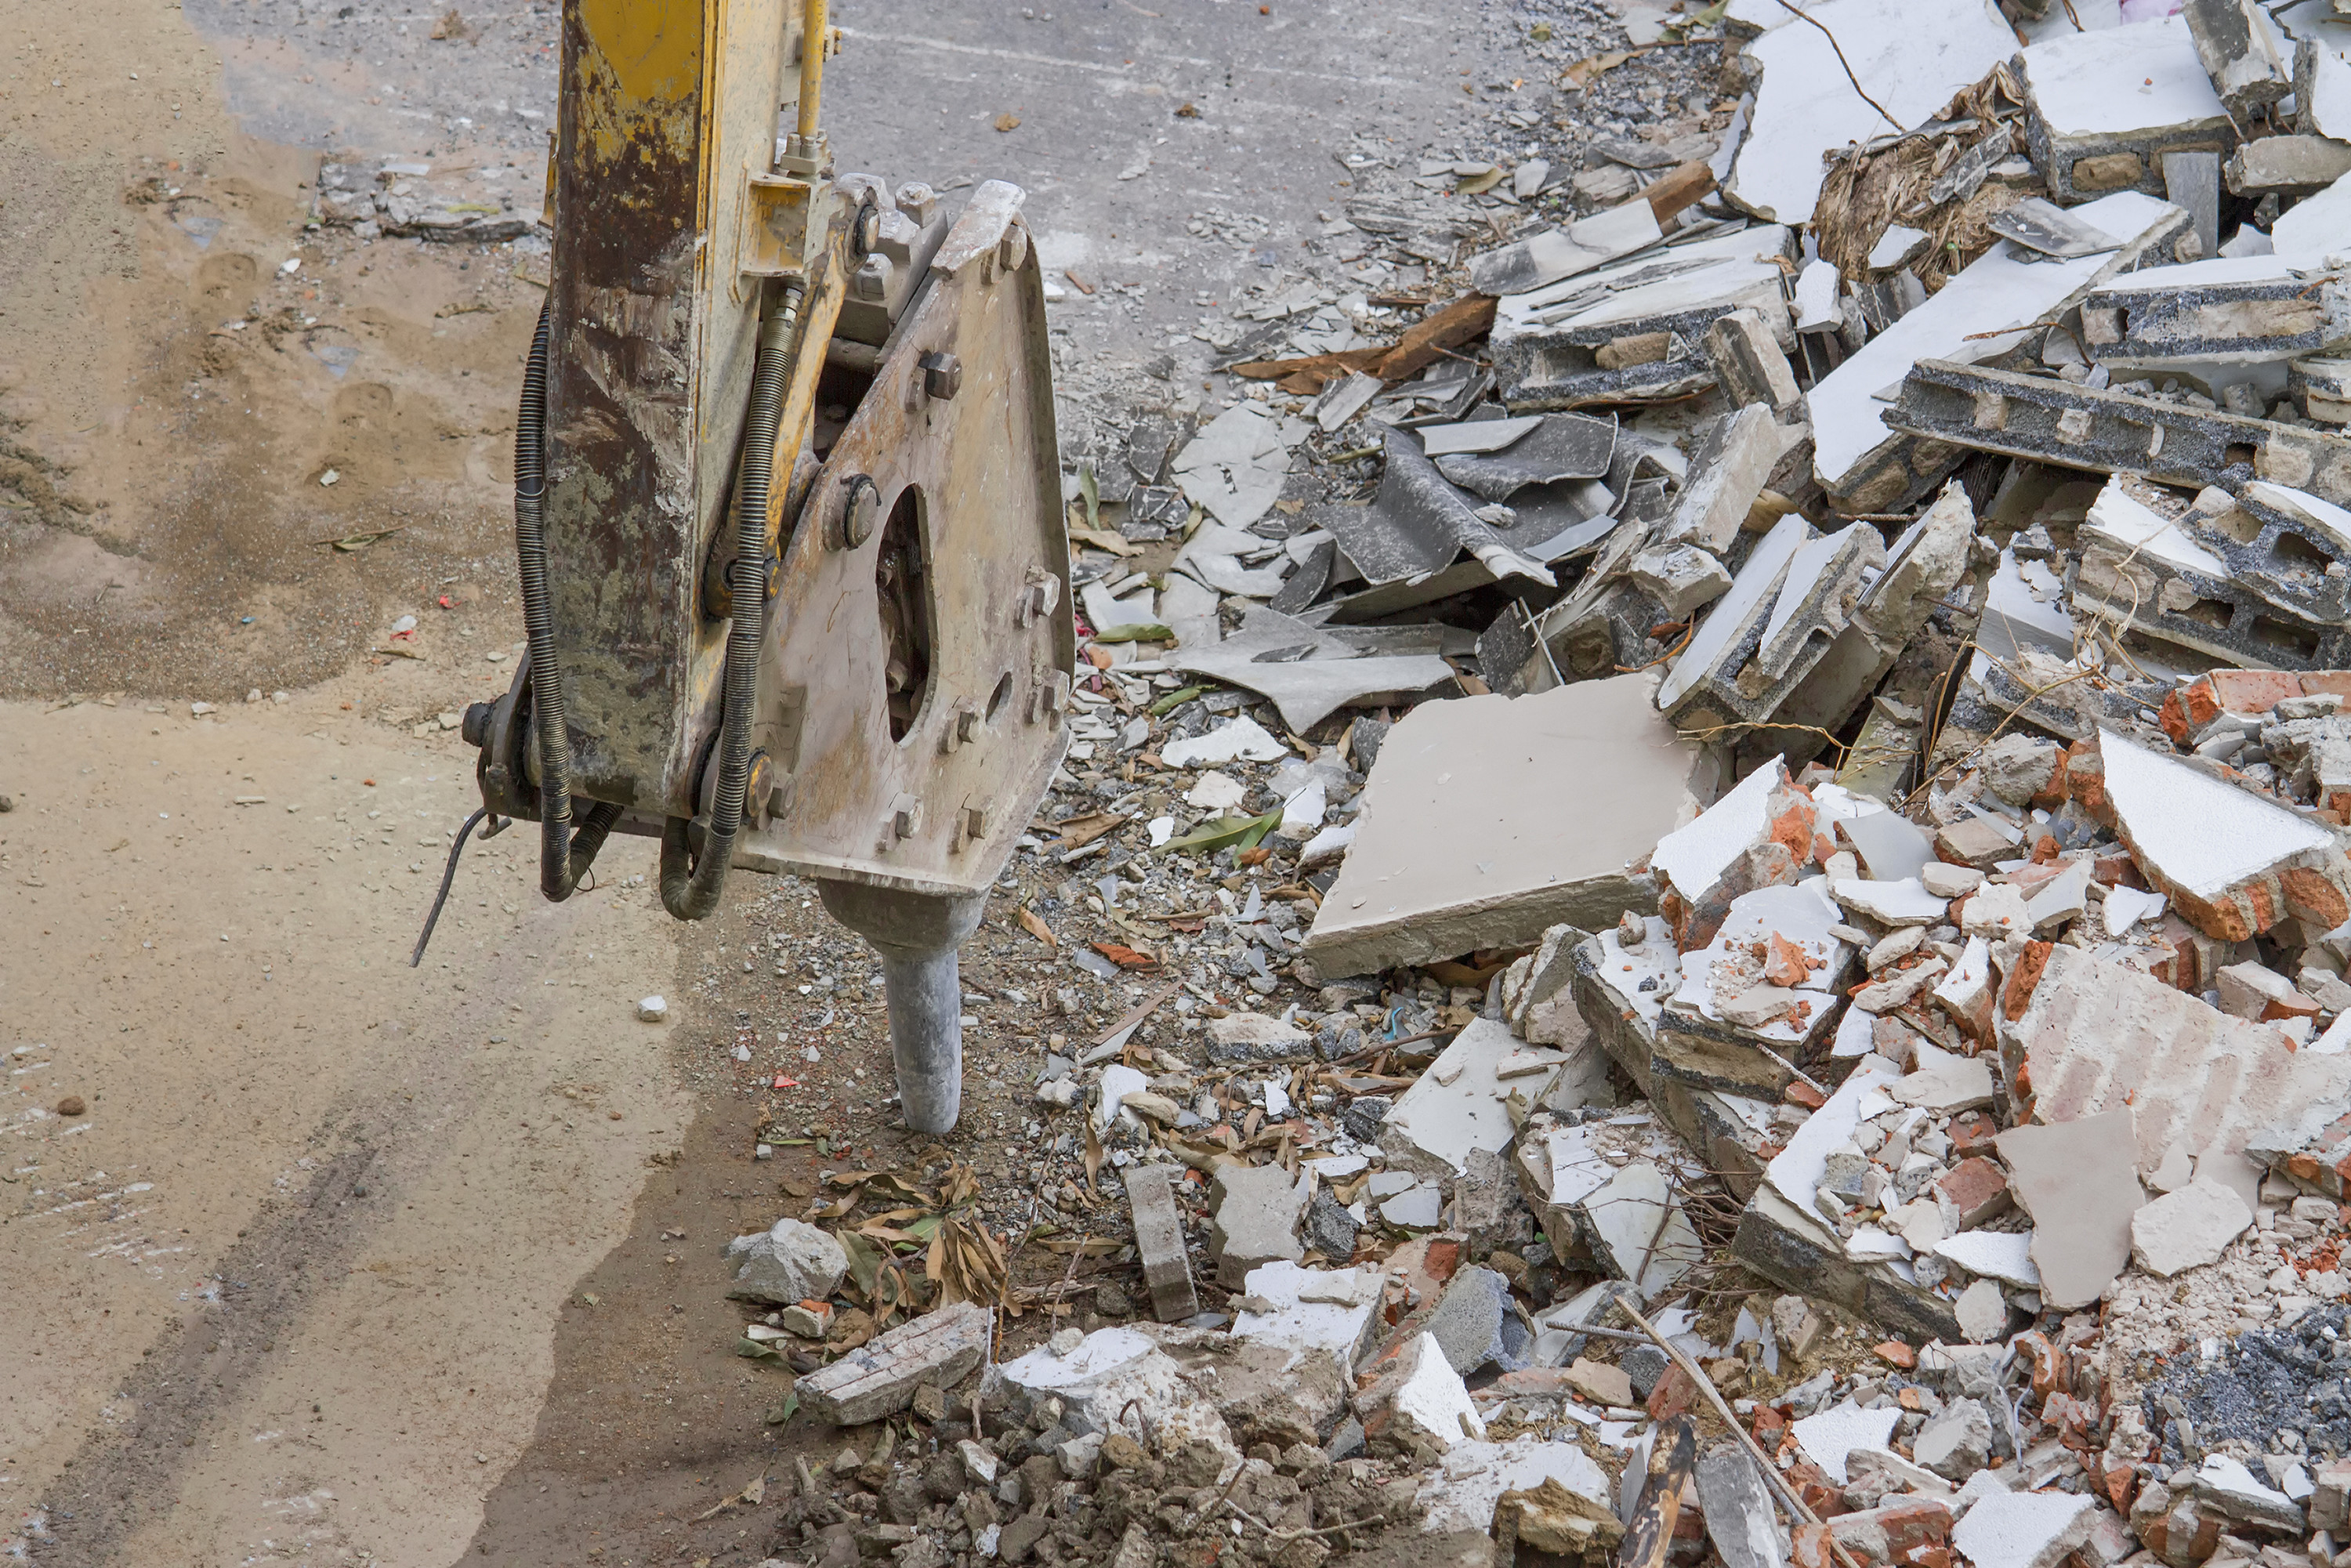 Das Bild zeigt den Abbruch eines Industriegebäudes mit einer Betonbohrmaschine. Neben der Maschine liegt Bauschutt.